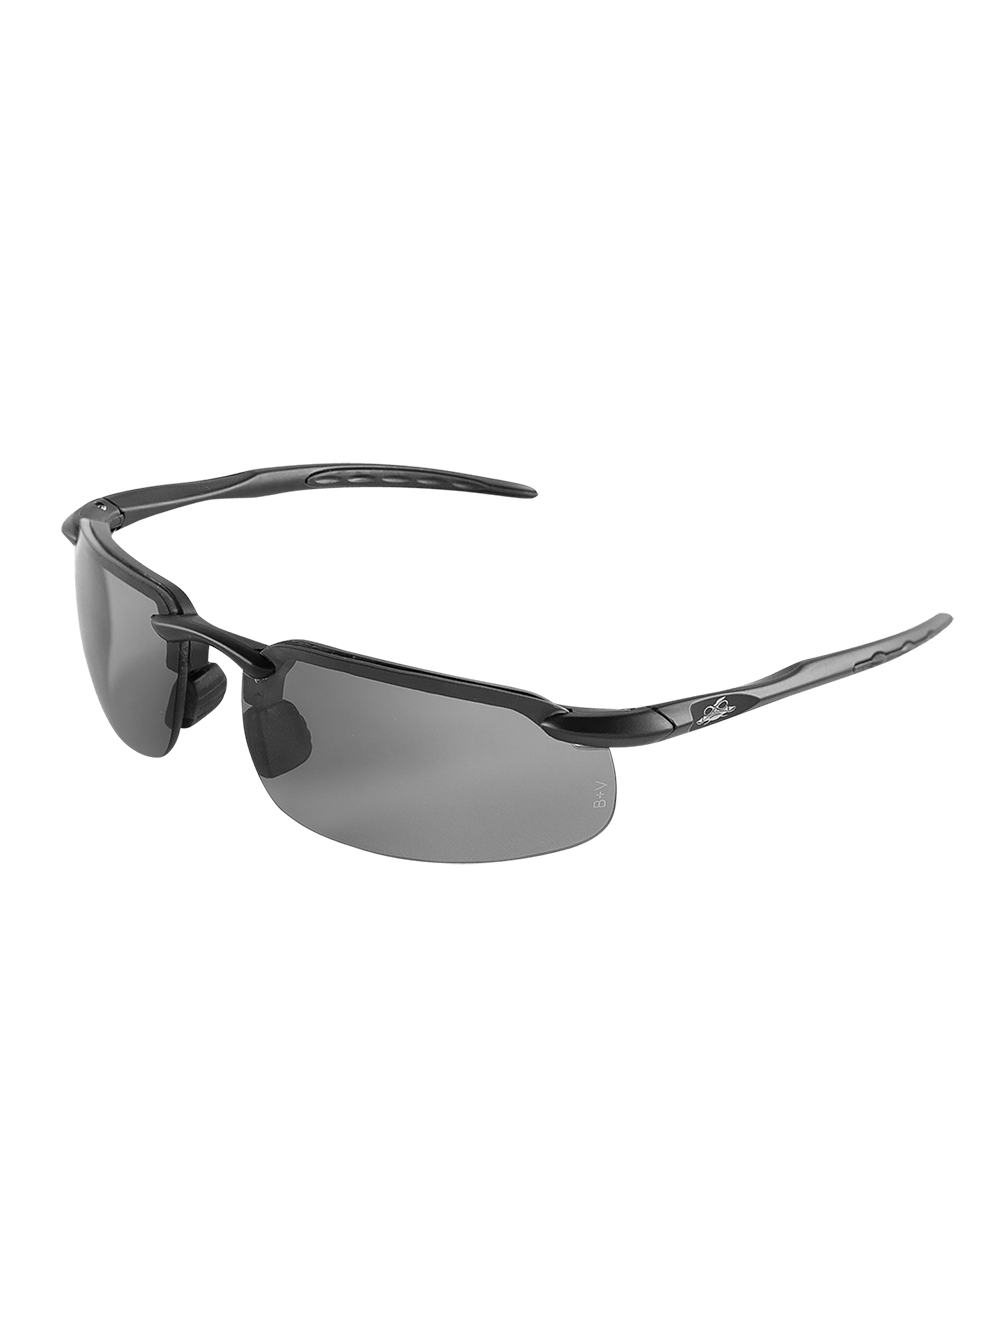 Swordfish® Variable Tint Anti-Fog Polarized Lens, Matte Black Frame Safety Glasses - BH1061213AF